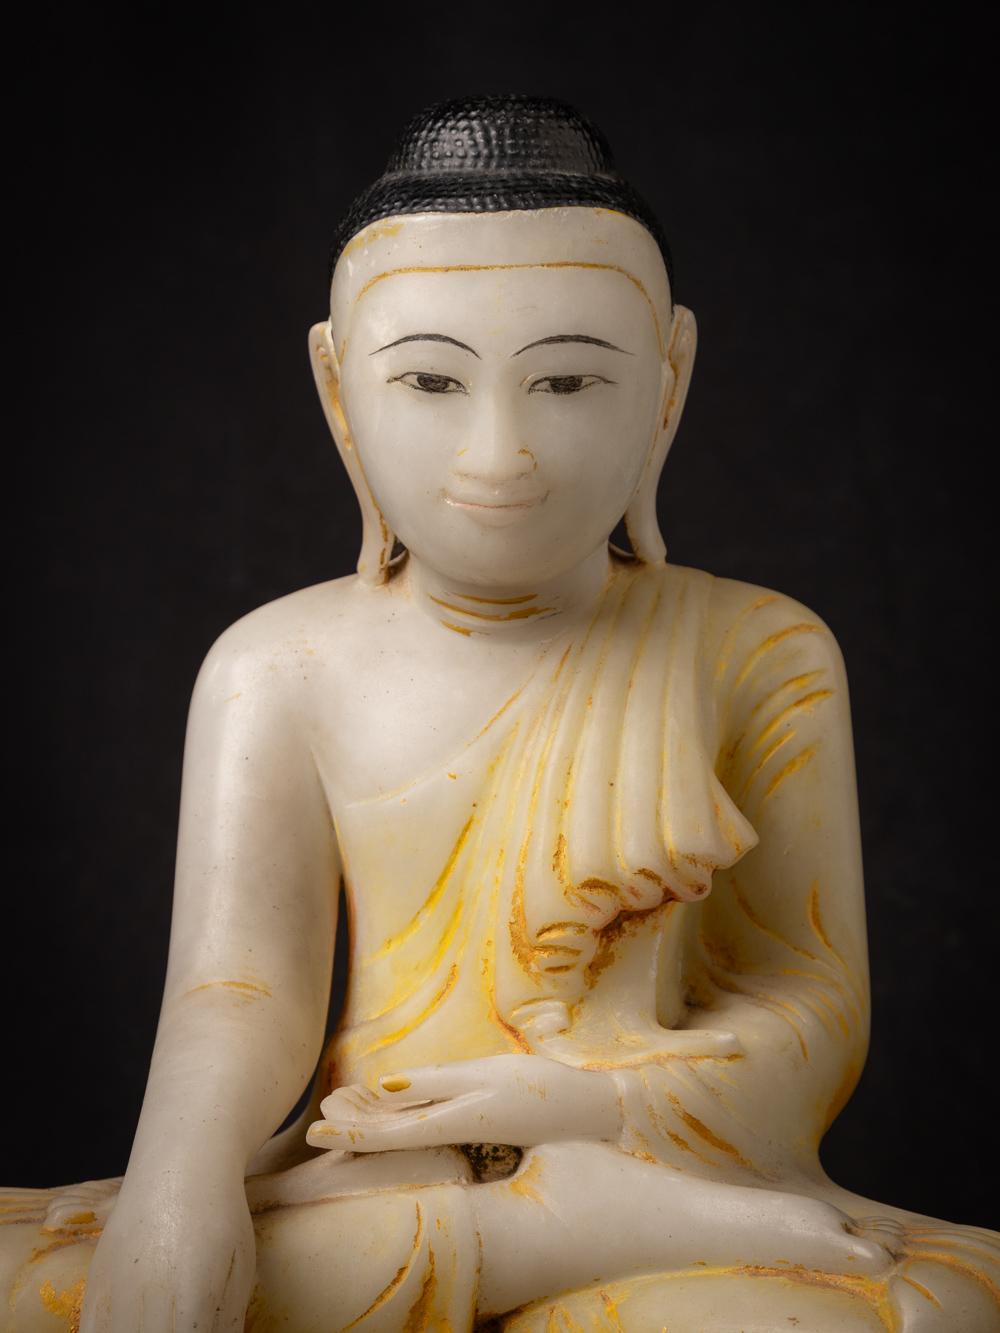 Diese antike birmanische Buddha-Statue aus Marmor ist eine großartige Darstellung buddhistischer Hingabe. Er ist aus Marmor gefertigt und hat eine beeindruckende Höhe von 48 cm sowie Abmessungen von 41,4 cm in der Breite und 26 cm in der Tiefe.